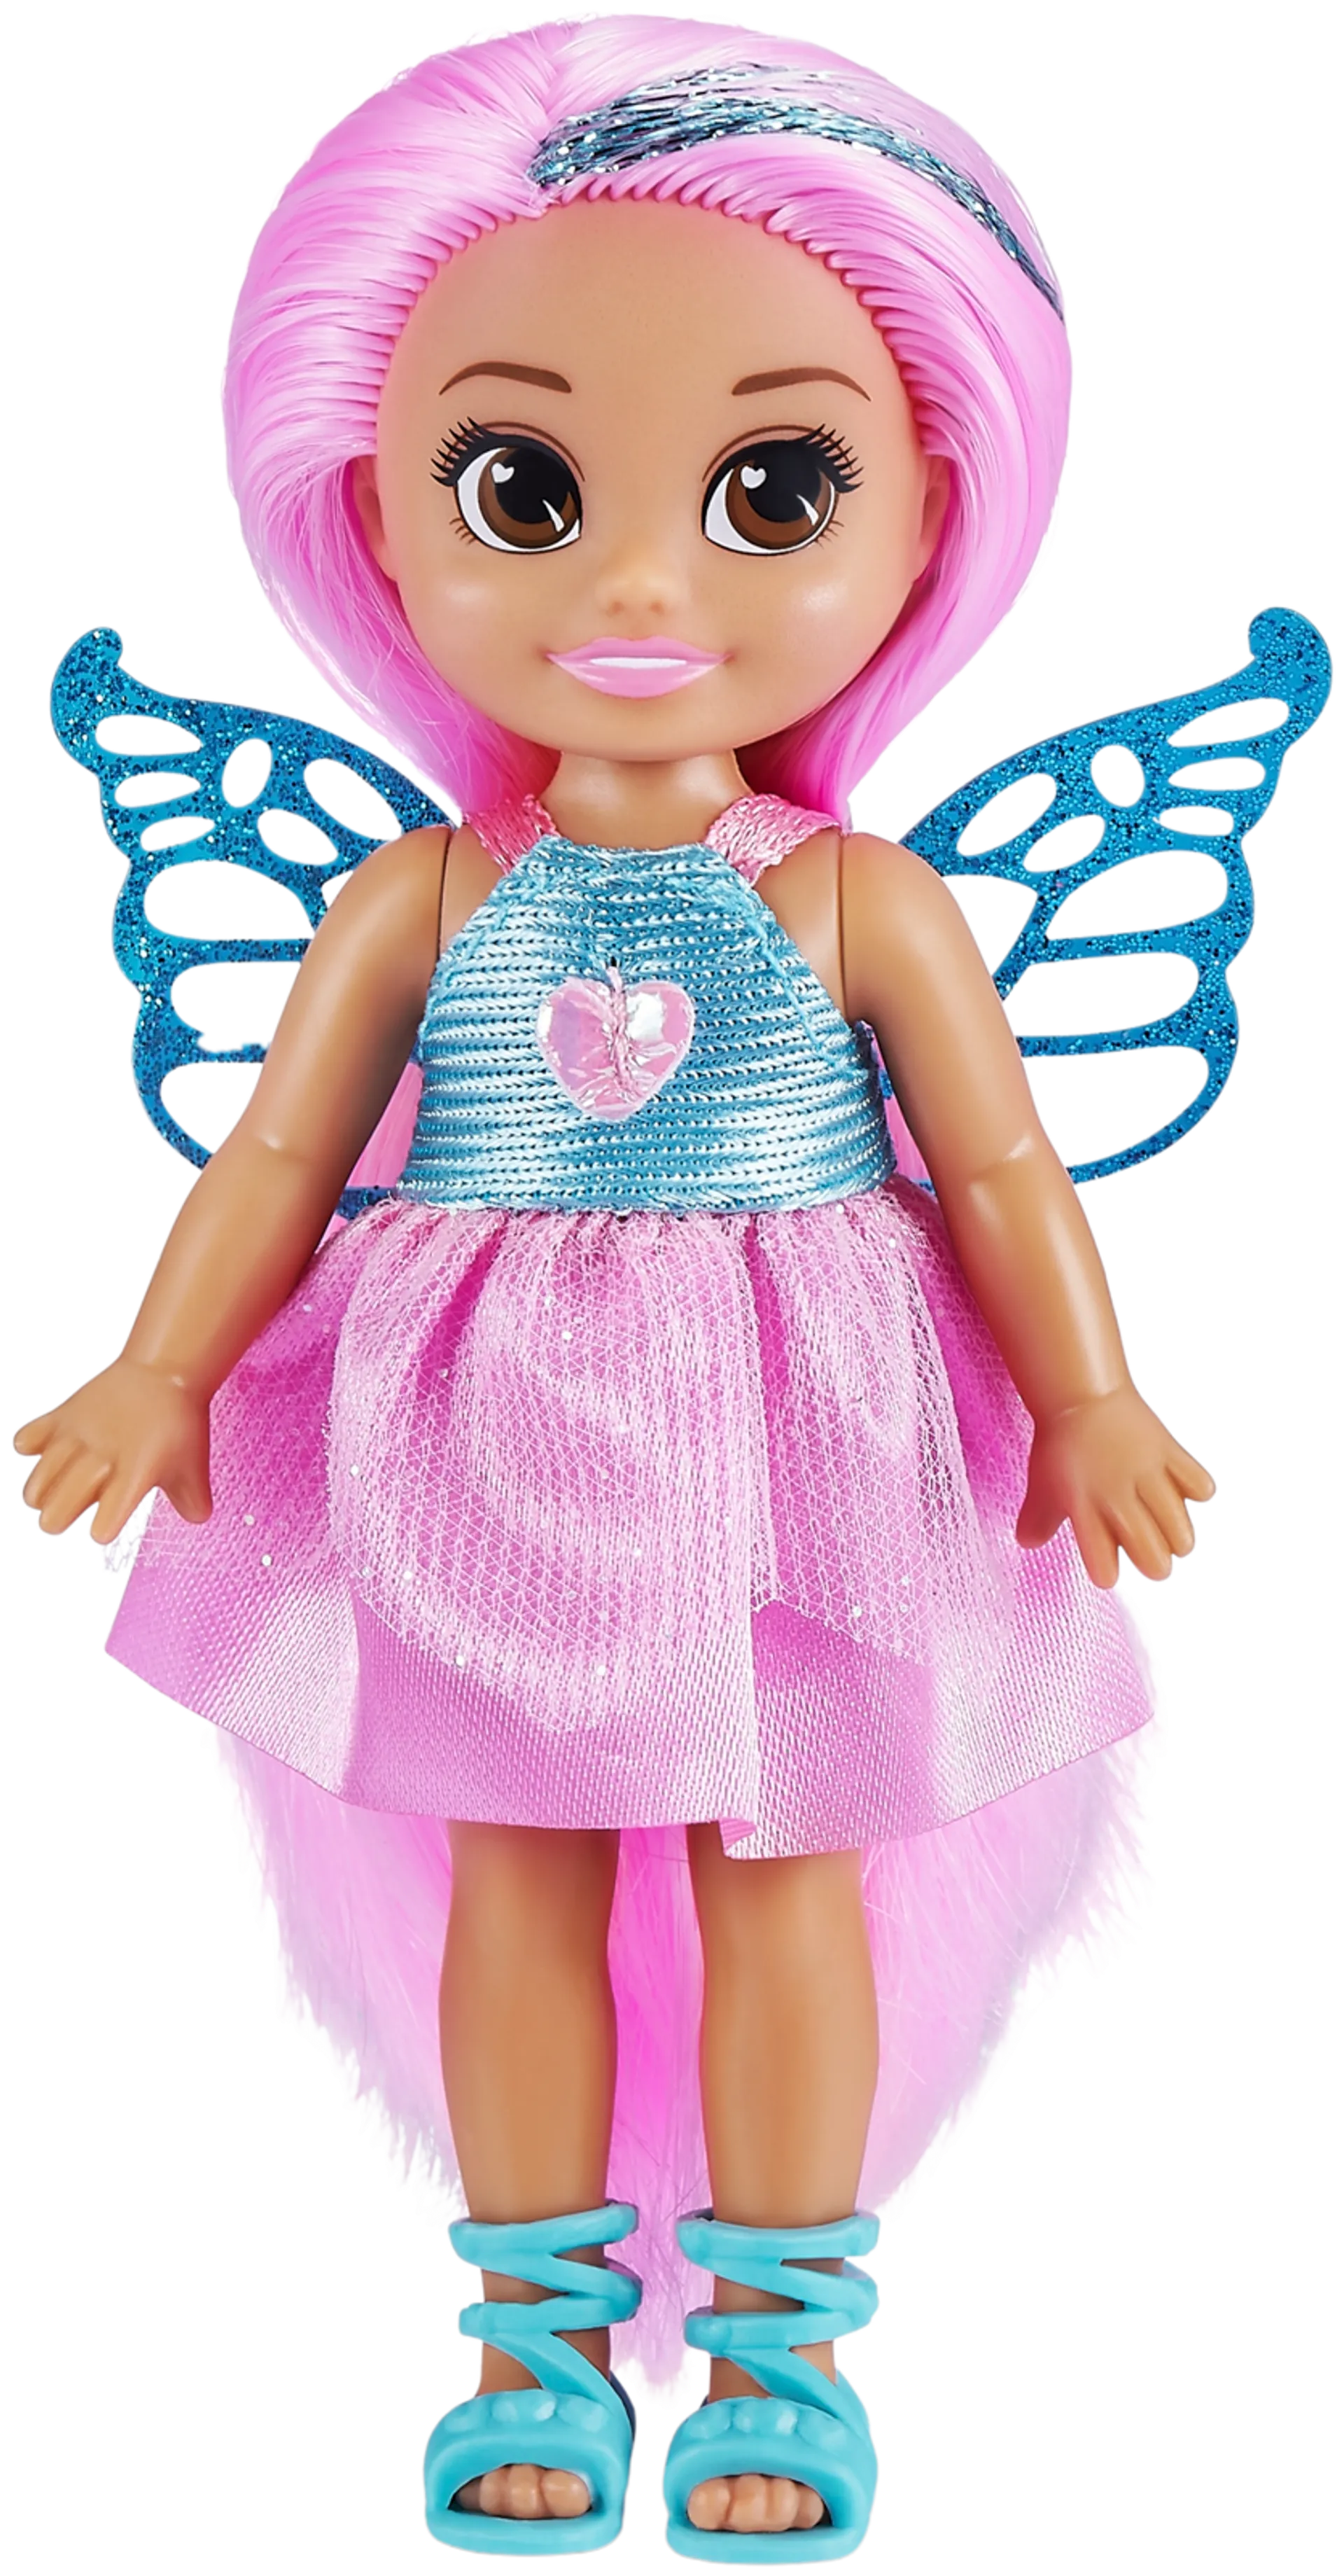 Fairy princess cupcake doll - 2